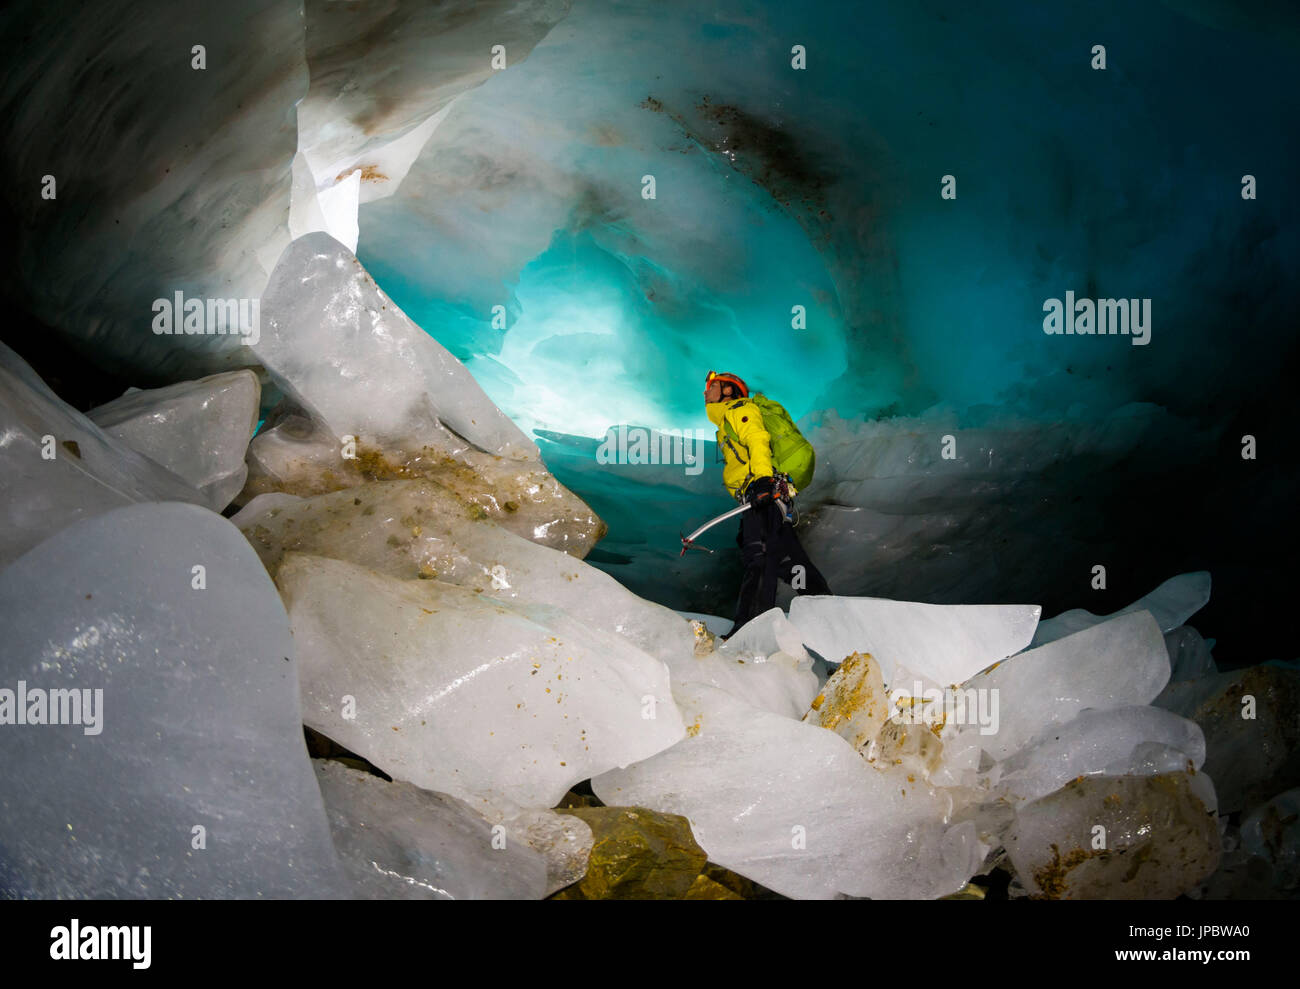 La cueva de hielo, Paradisin glaciar, Valle de Livigno, Lombardía, Italia Foto de stock